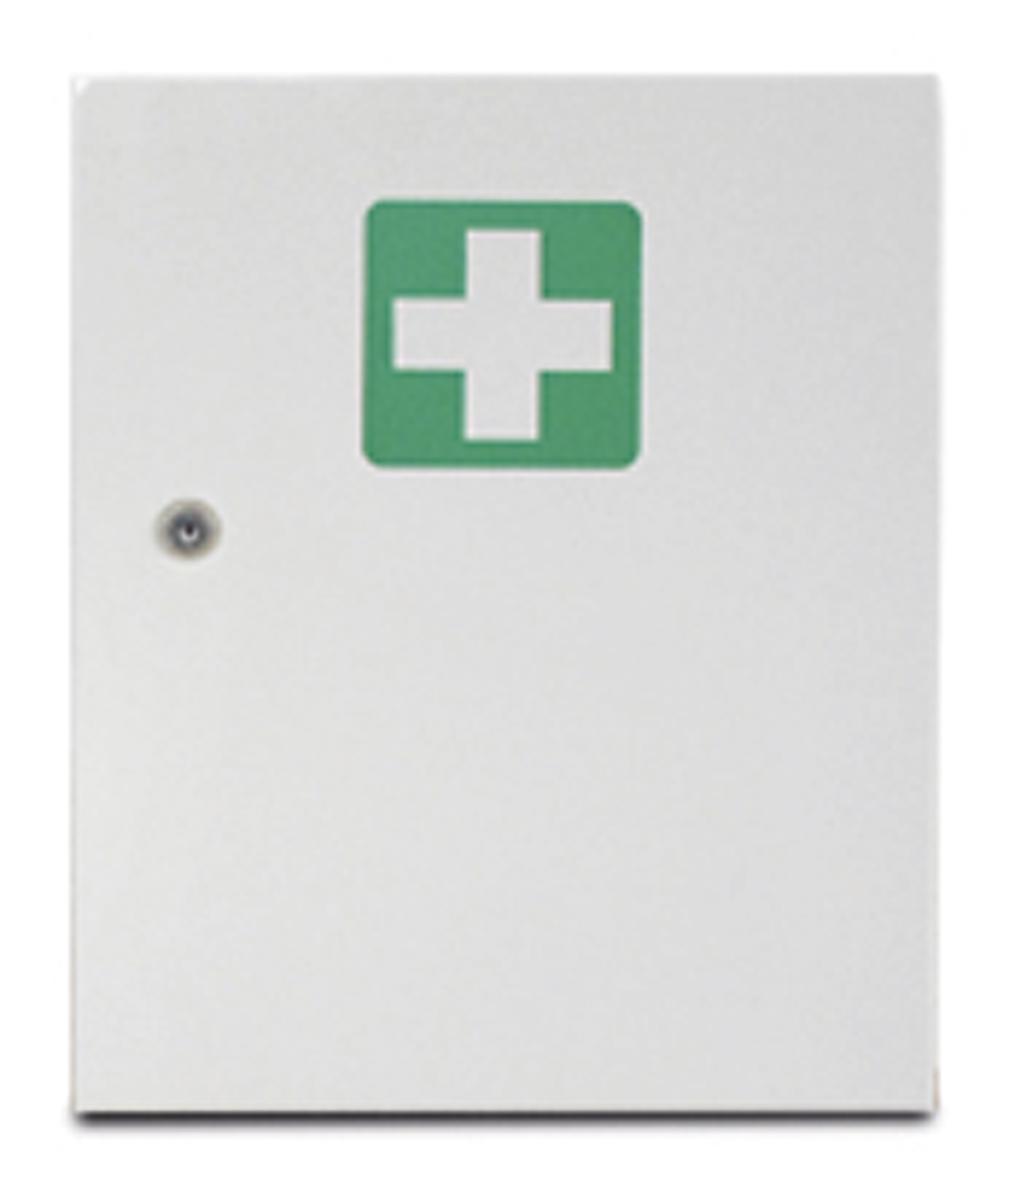 actiomedic Erste-Hilfe-Schrank aus Stahl, leer / für Füllung nach DIN 13157